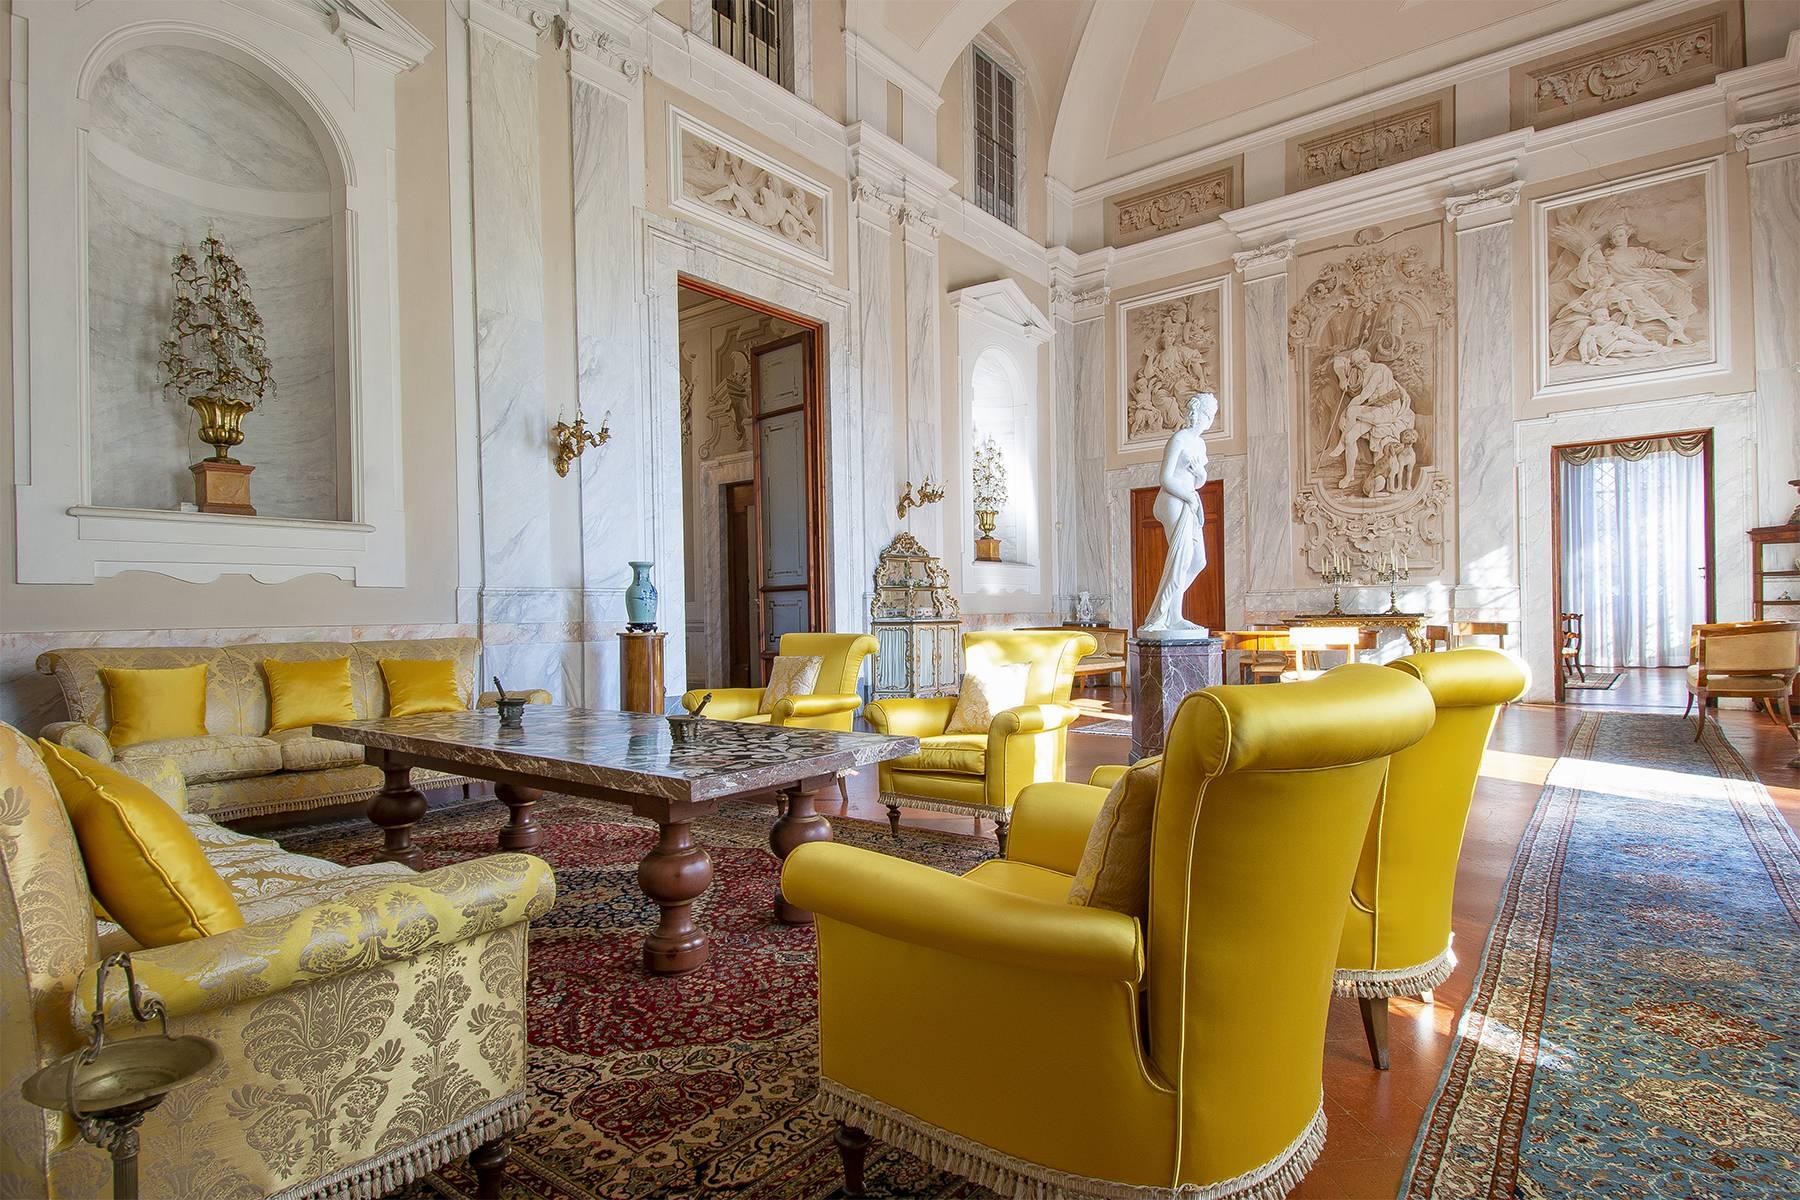 Stunning Historic mansion on the hills of Pistoia - 5